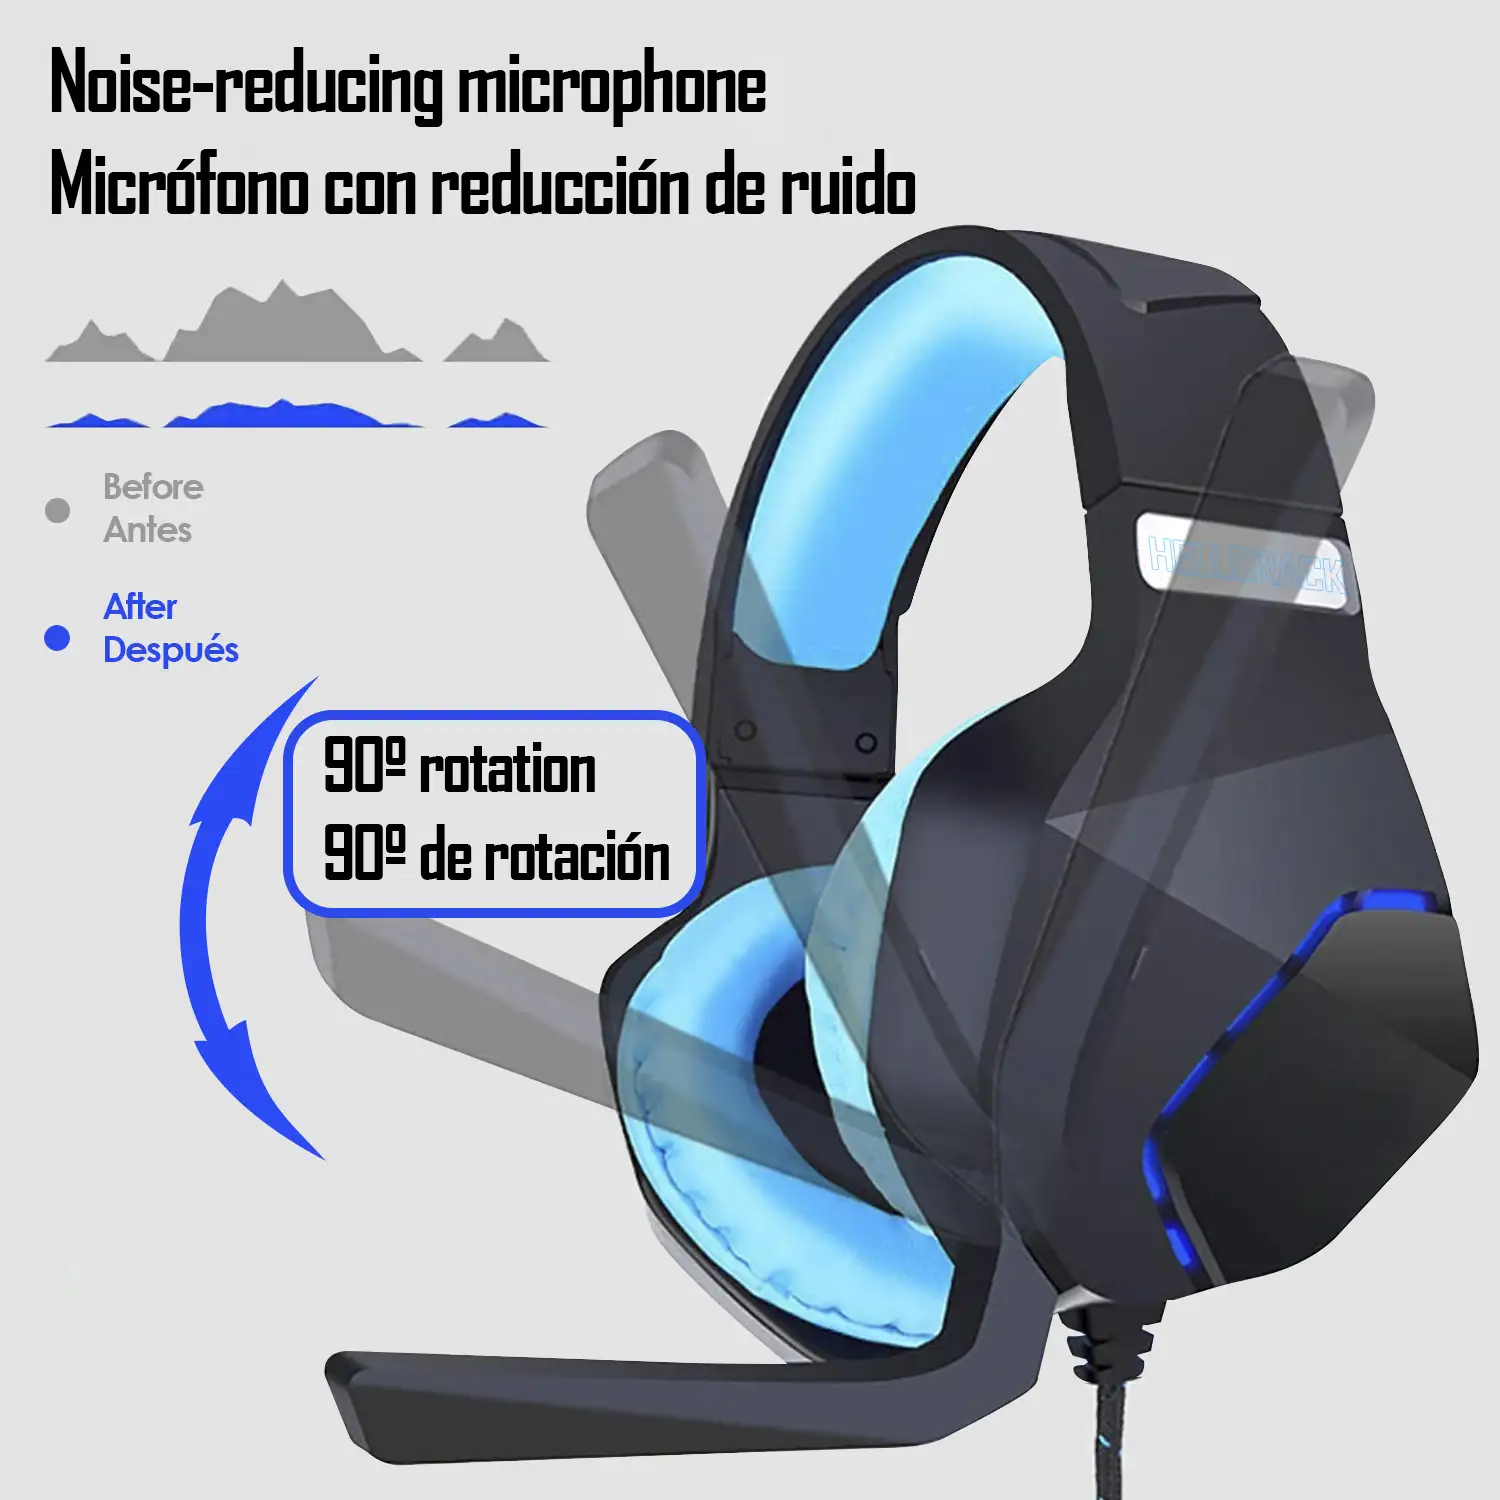 Headset G600 Hellcrack, auriculares especiales para gaming con microfono incorporado y cable con control de volumen.